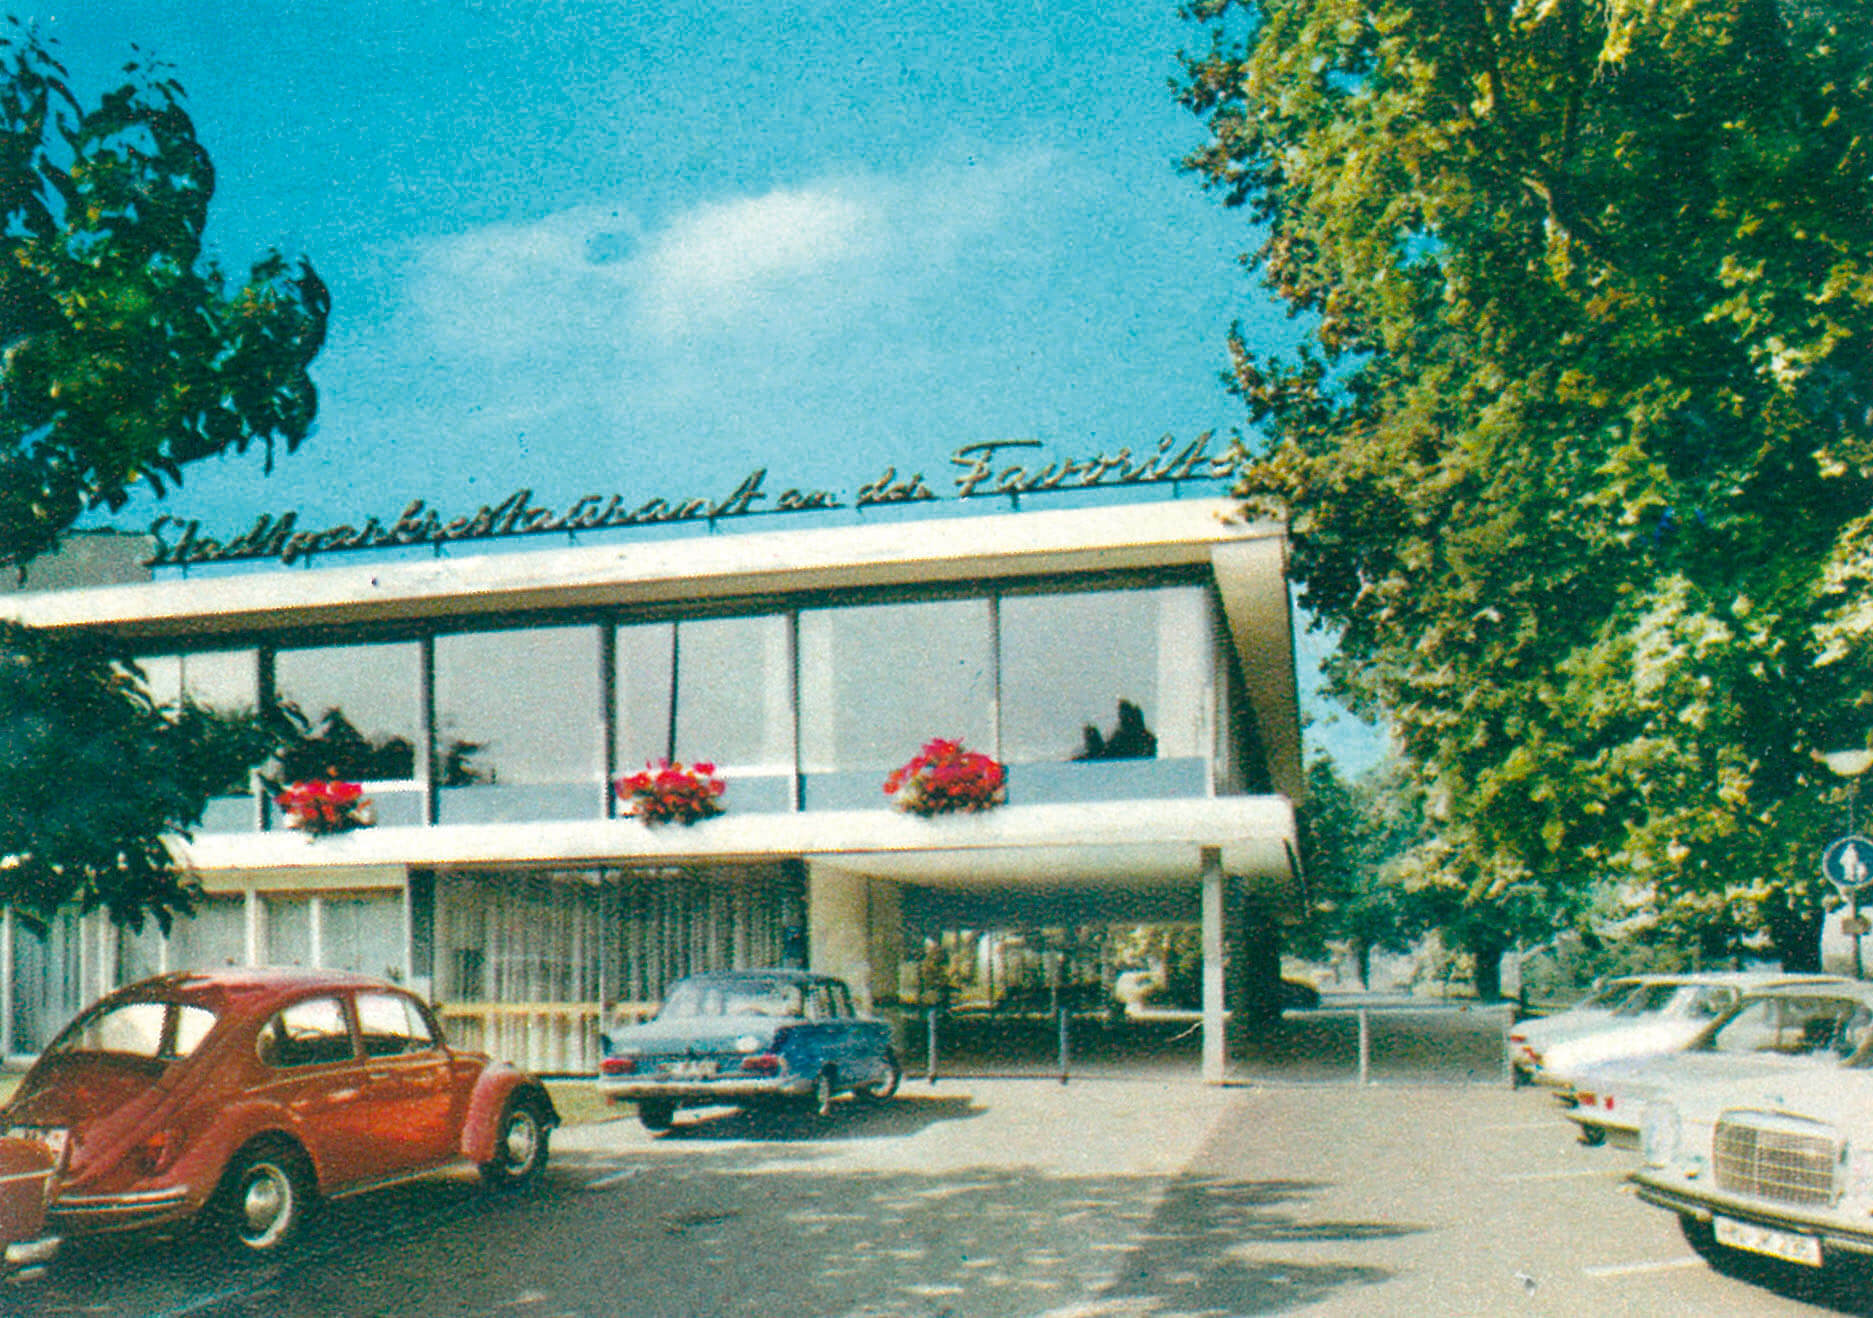 Favorite Parkhotel Mainz in den 70er Jahren